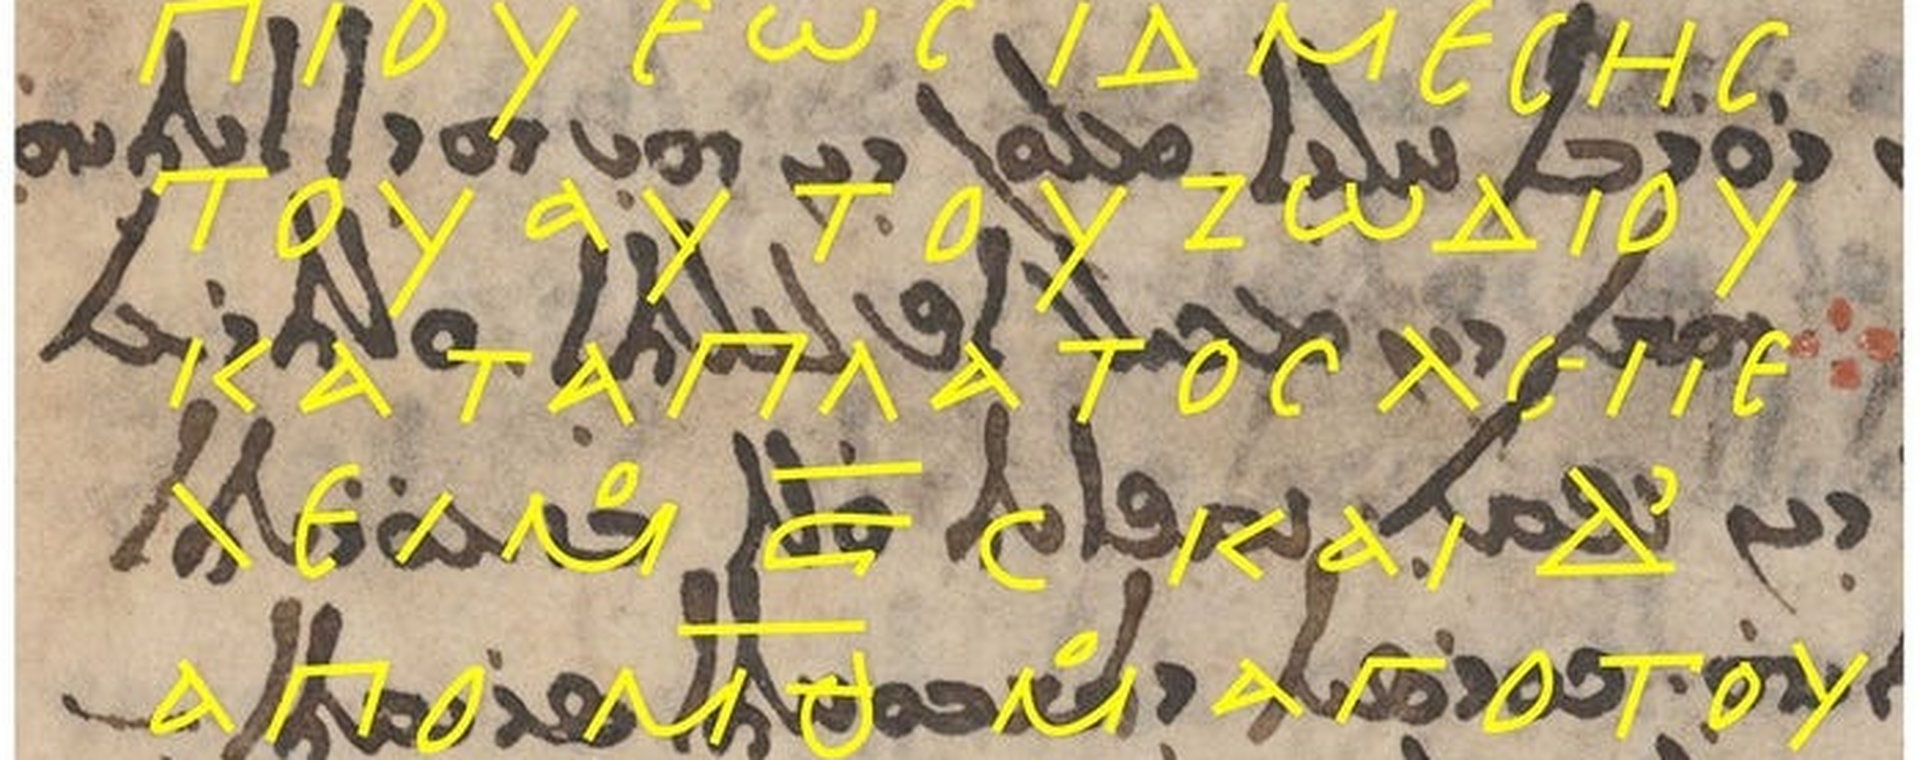 Żółte zarysy to współrzędne w dokumencie, który jest uważany za dawno zaginioną mapę gwiazd starożytnego greckiego astronoma Hipparcha.